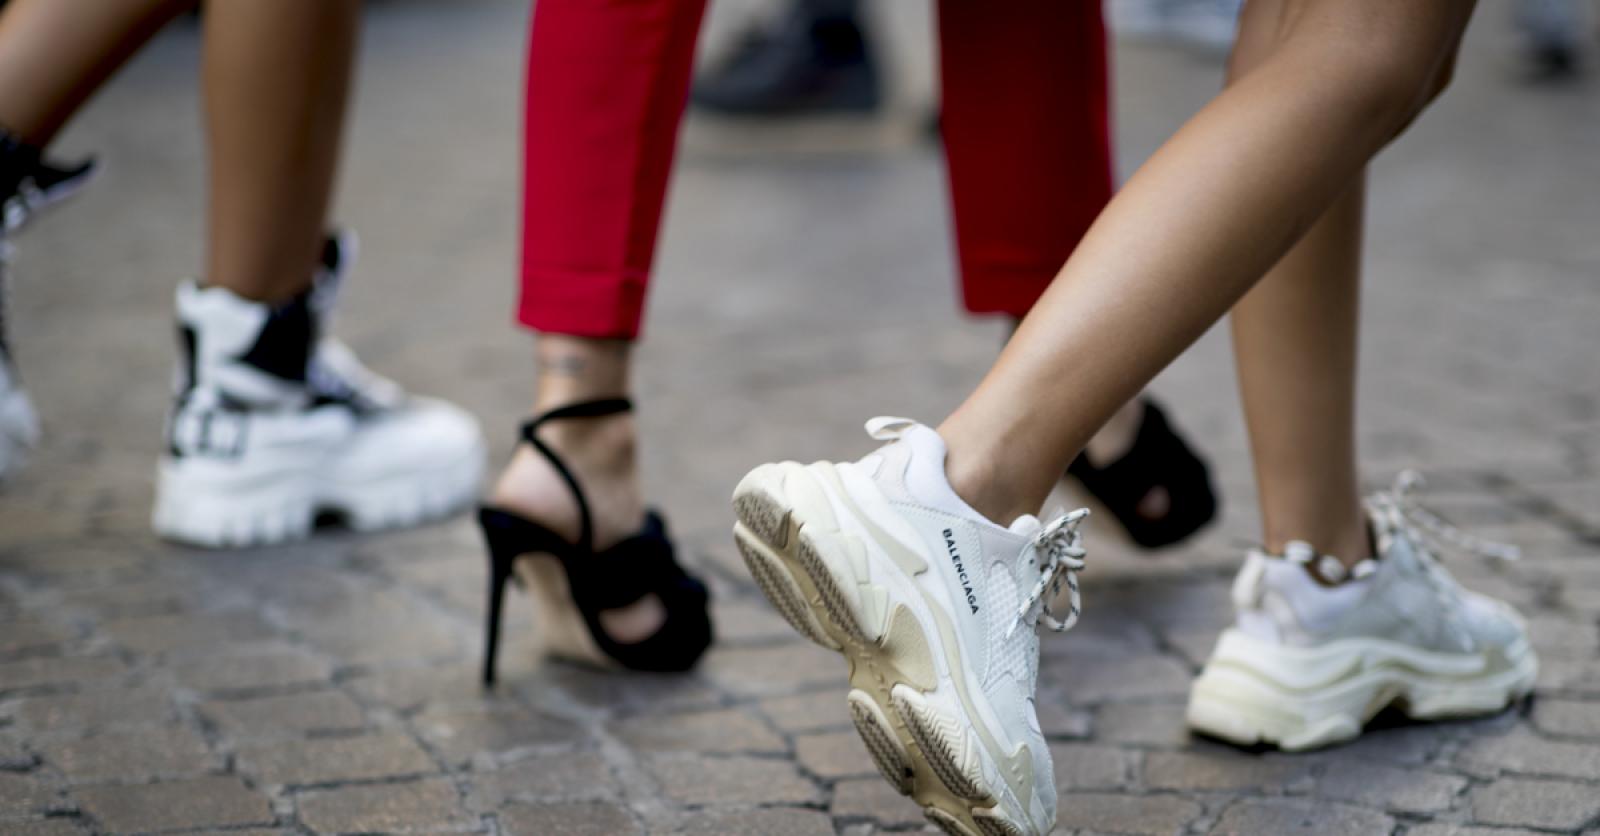 beweging Arctic het winkelcentrum 5 tips om witte sneakers terug stralend wit te krijgen